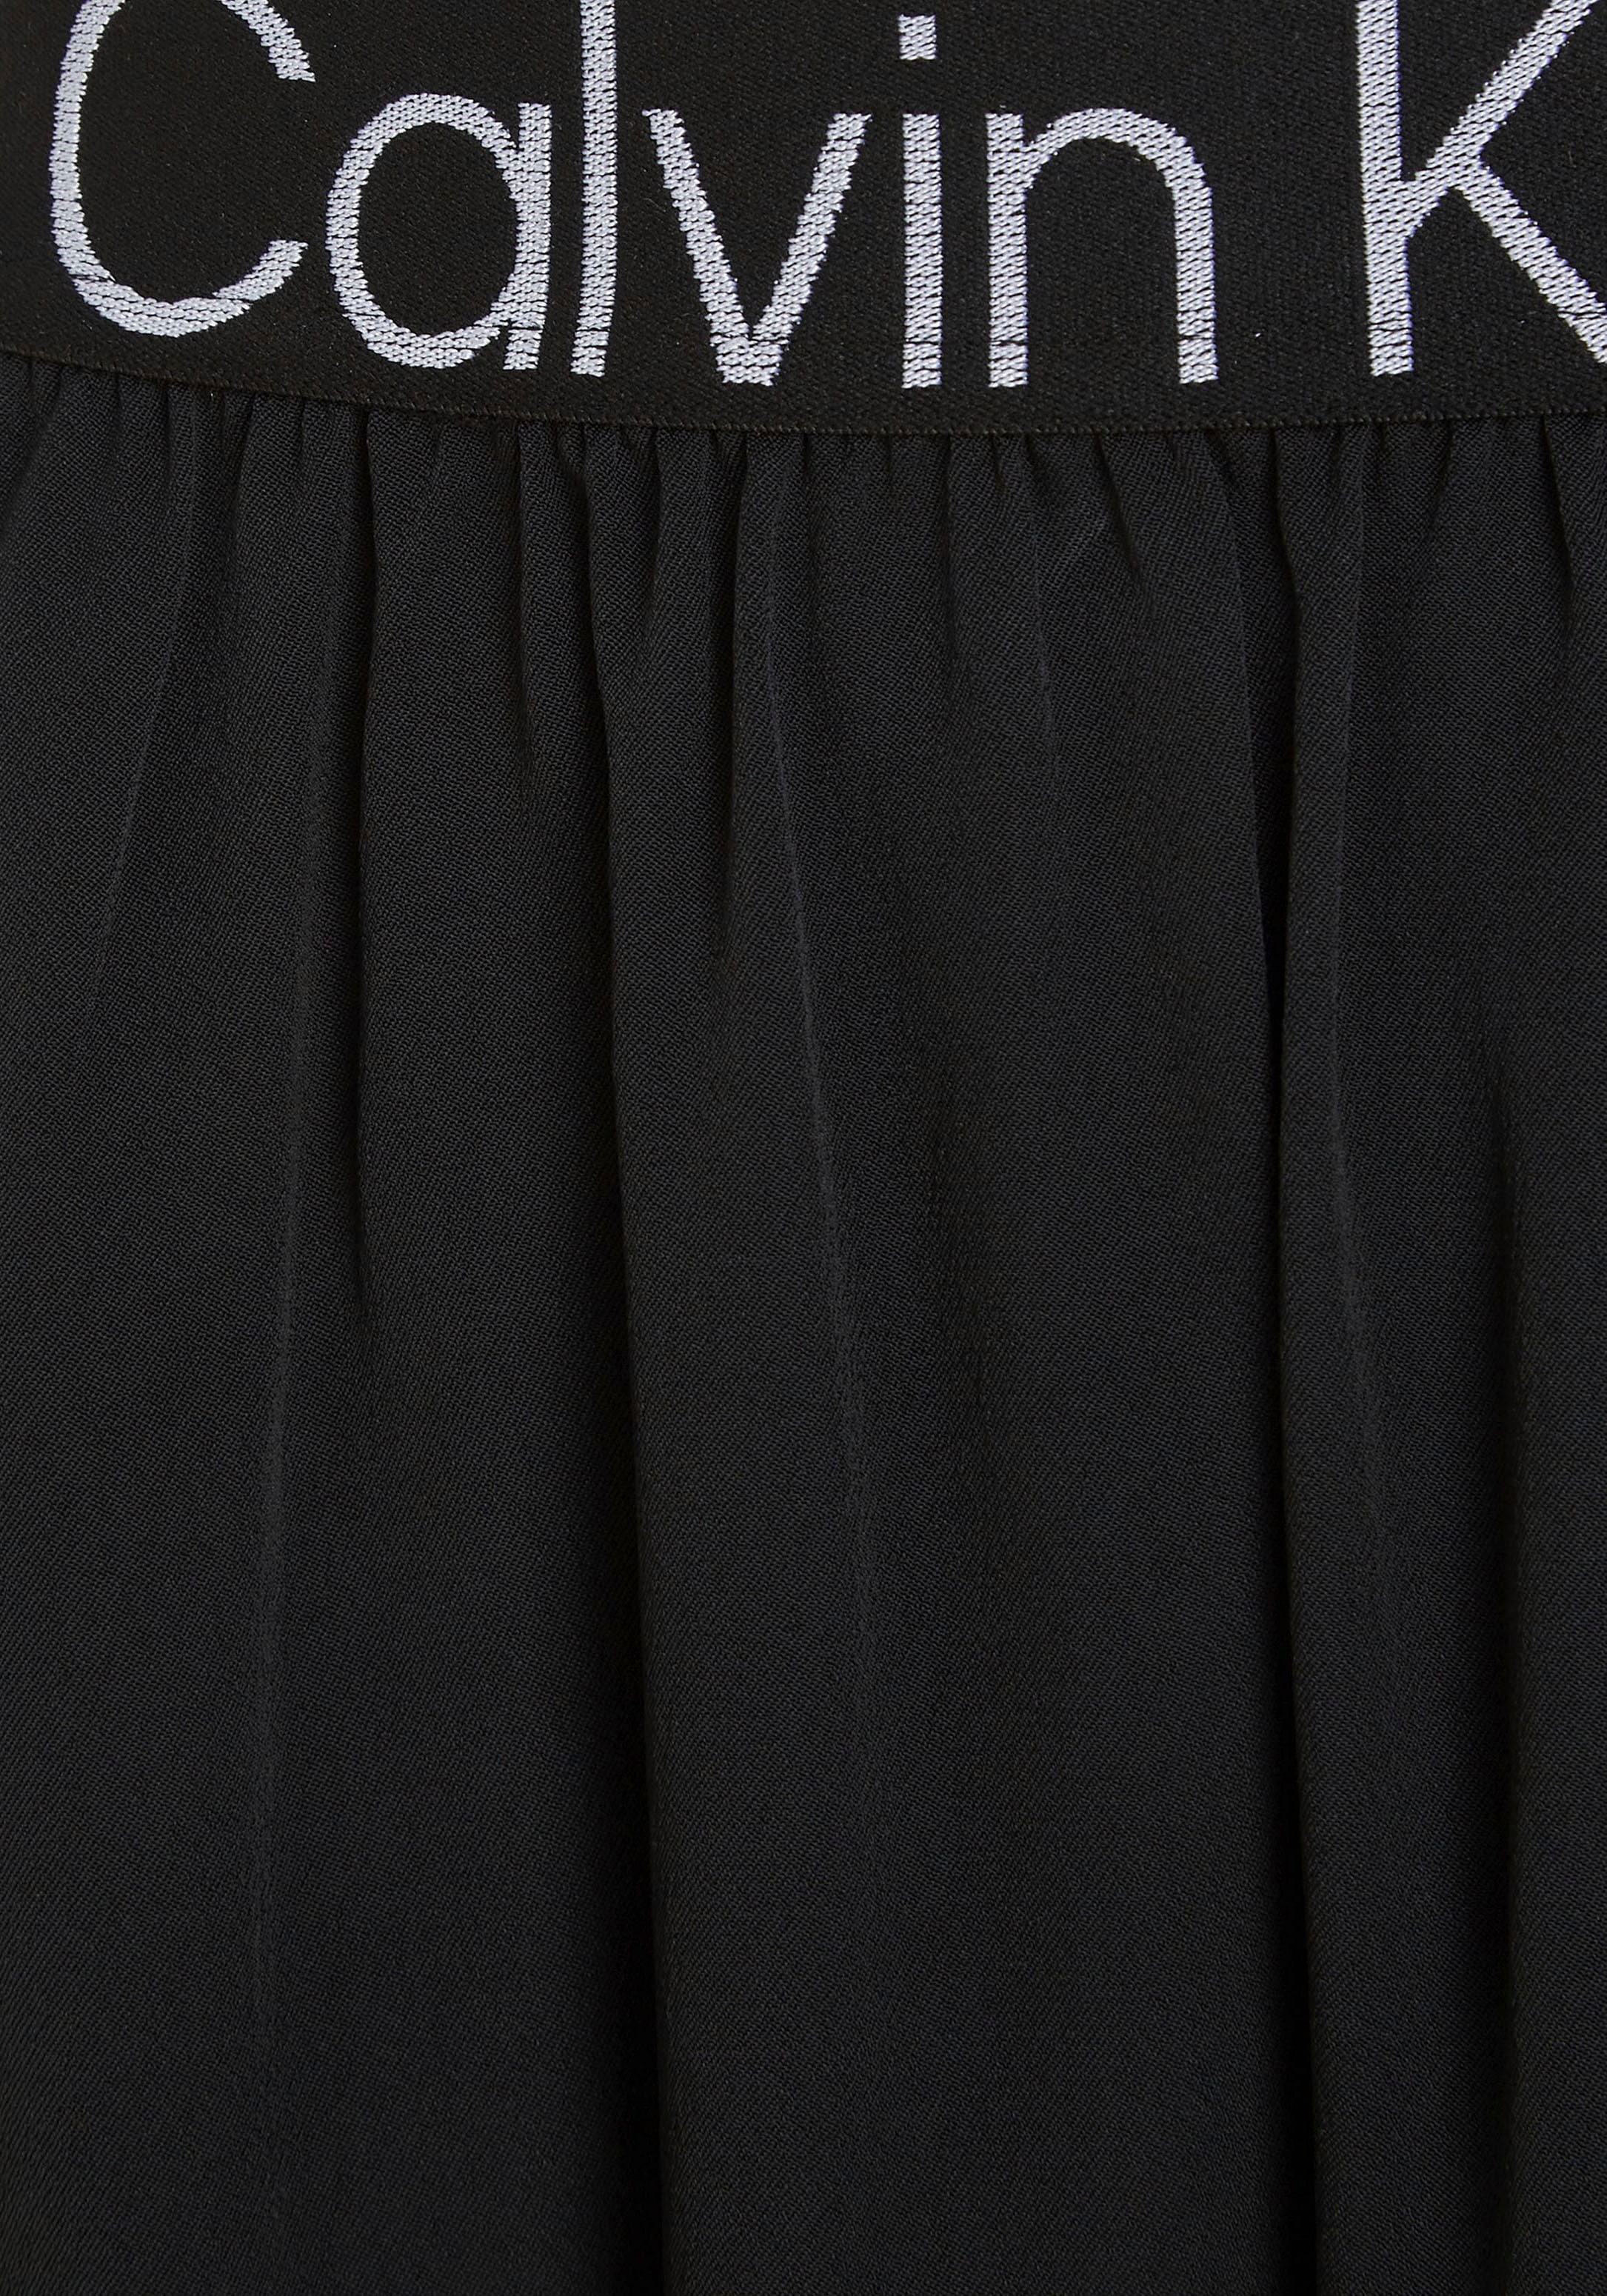 Calvin Klein Jeans Minirock, mit elastischem Calvin Klein Jeans-Bund im  OTTO Online Shop